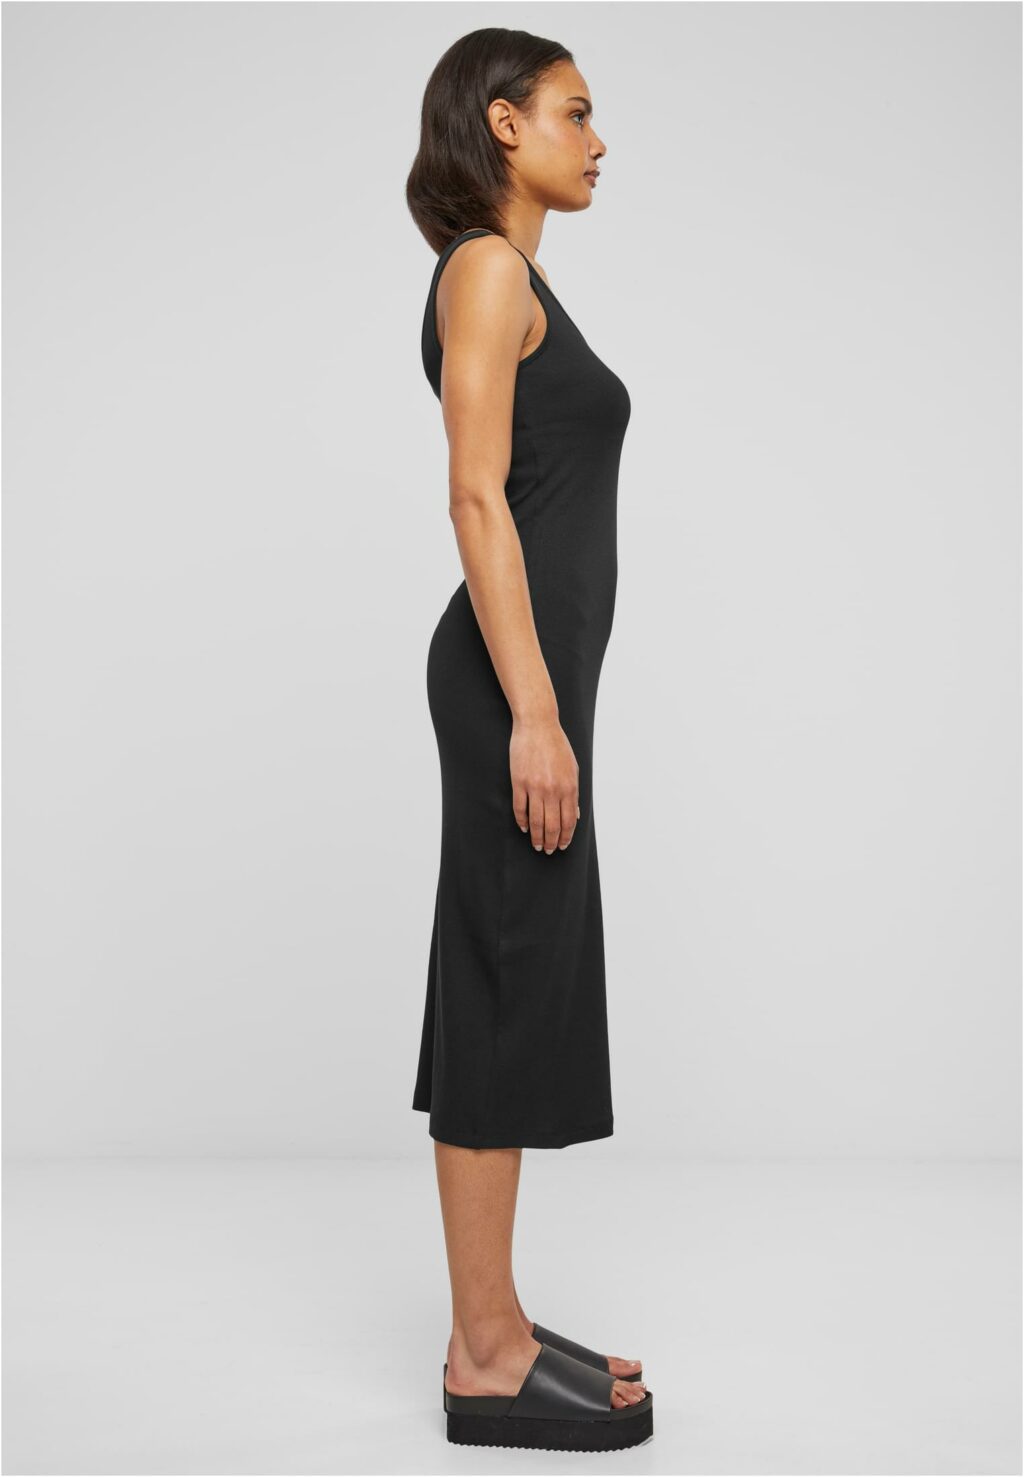 Urban Classics Ladies Rib Top Dress black TB6190